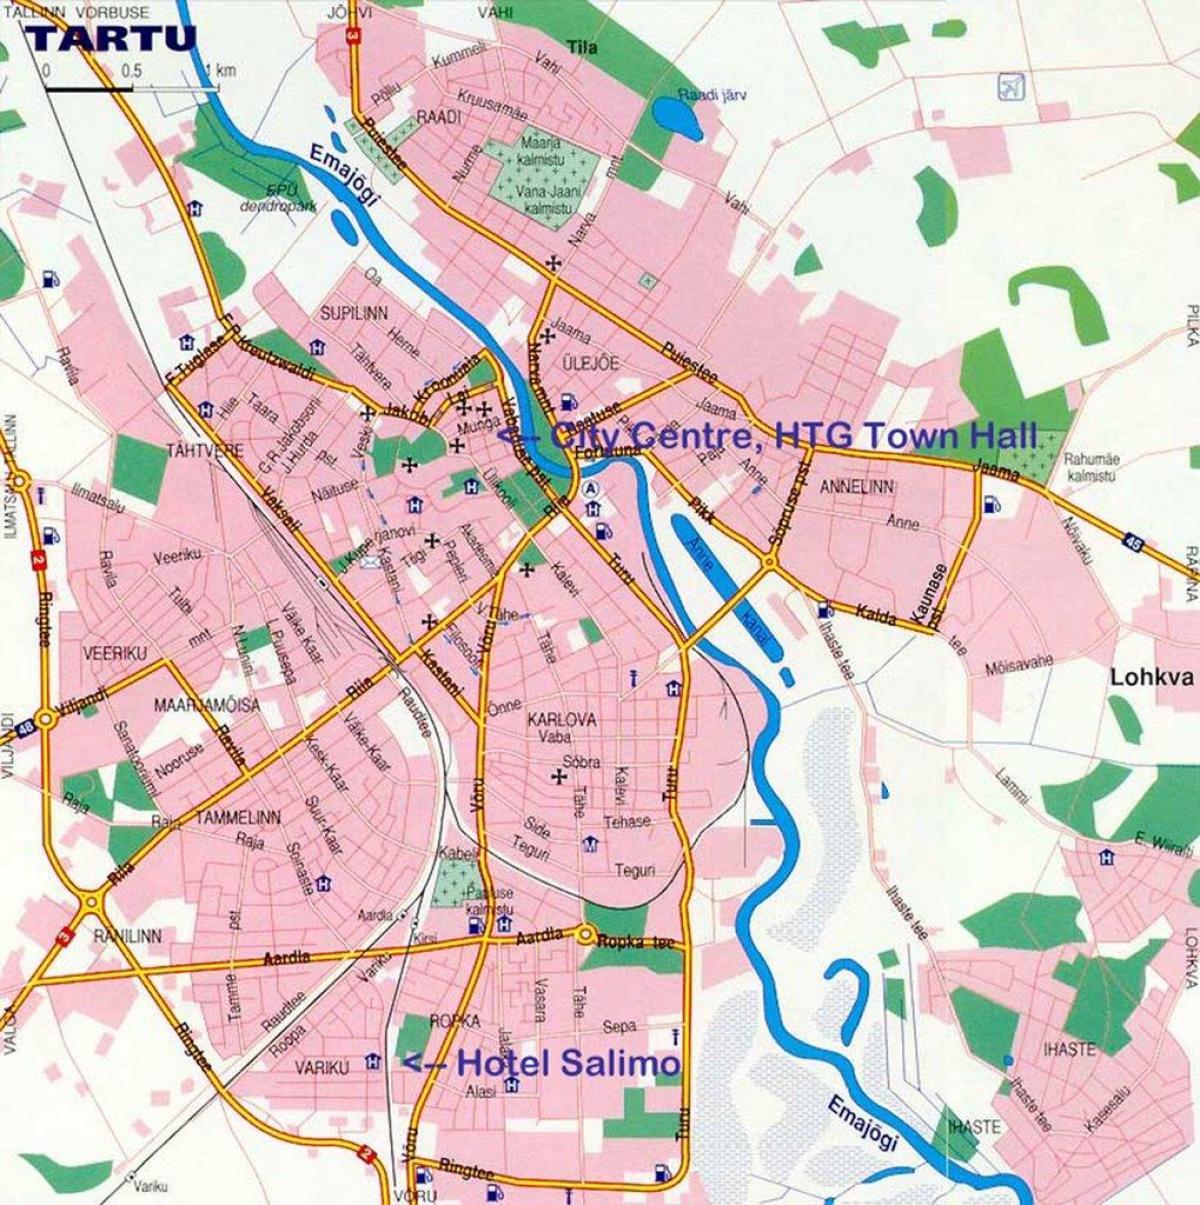 zemljevid tartu v Estoniji